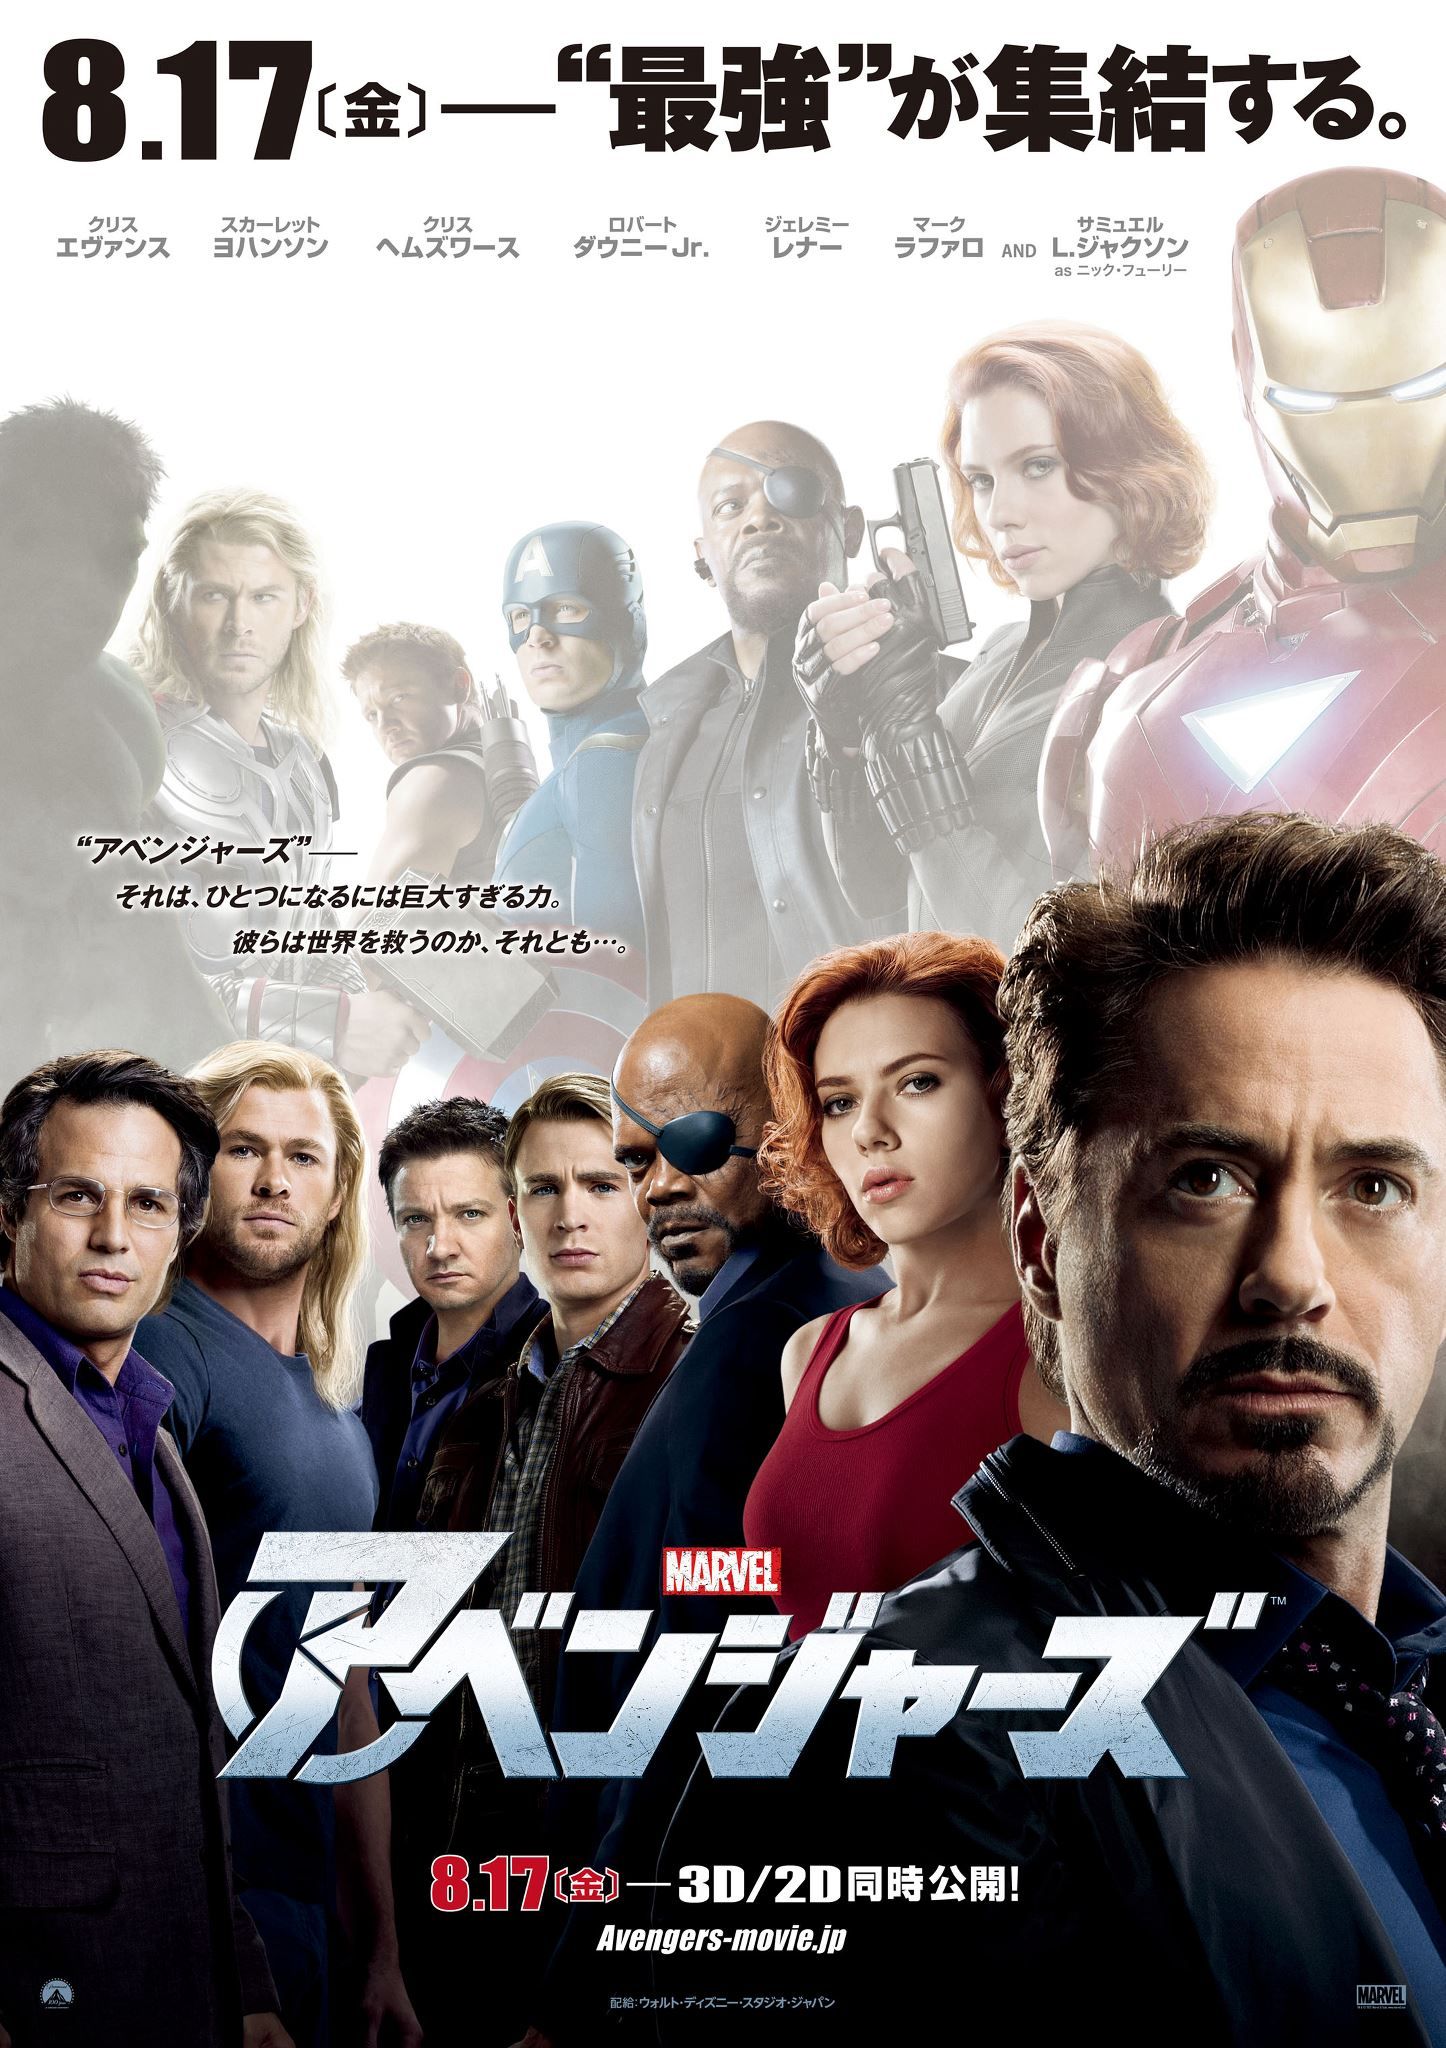 Mavrel's The Avengers Japanese Poster